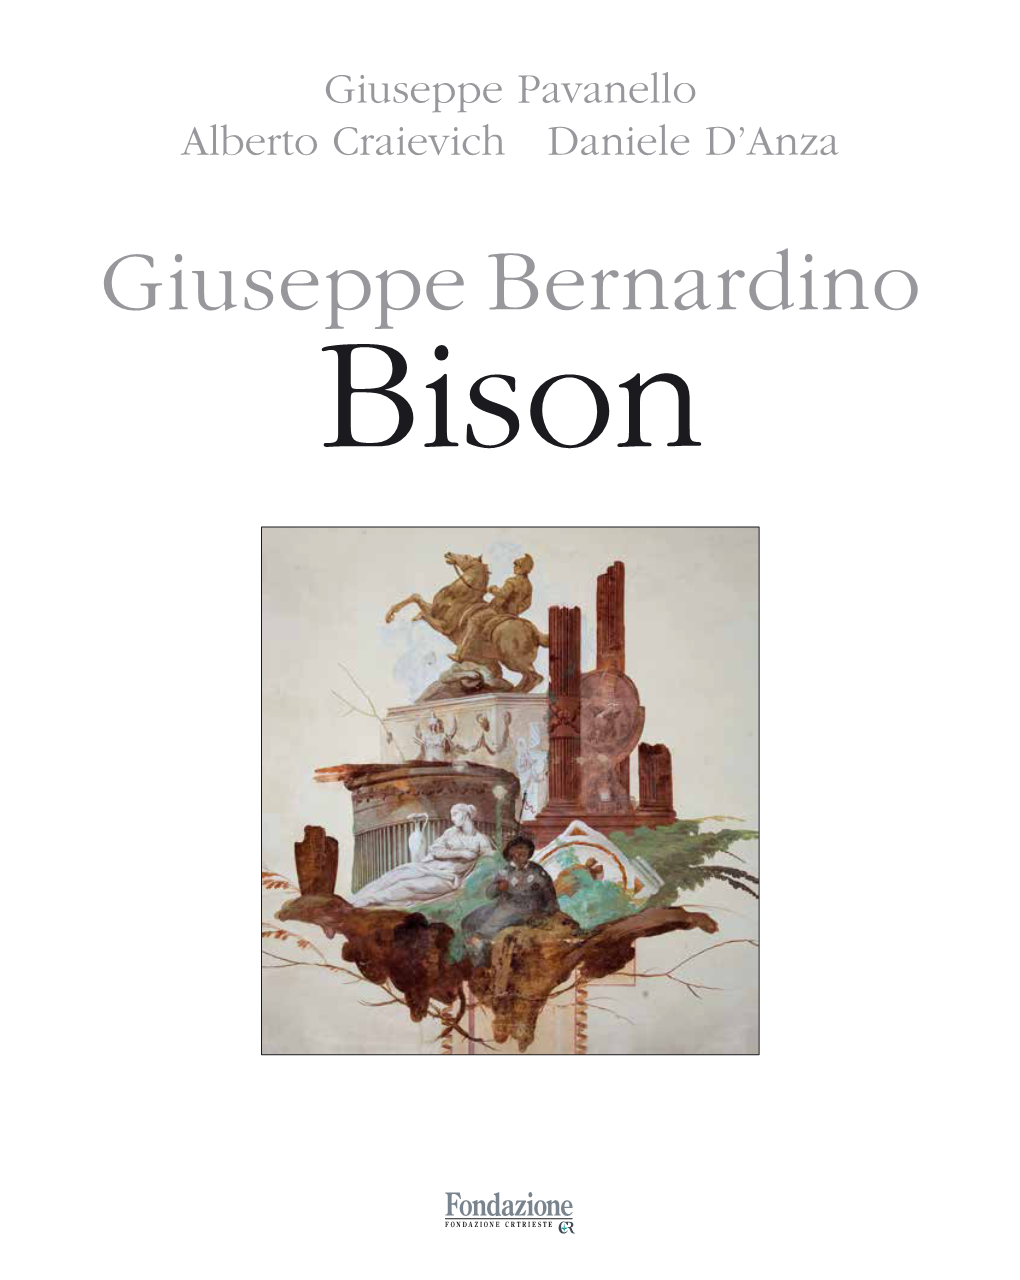 Giuseppe Bernardino Bison Collana D’Arte Della Fondazione Crtrieste